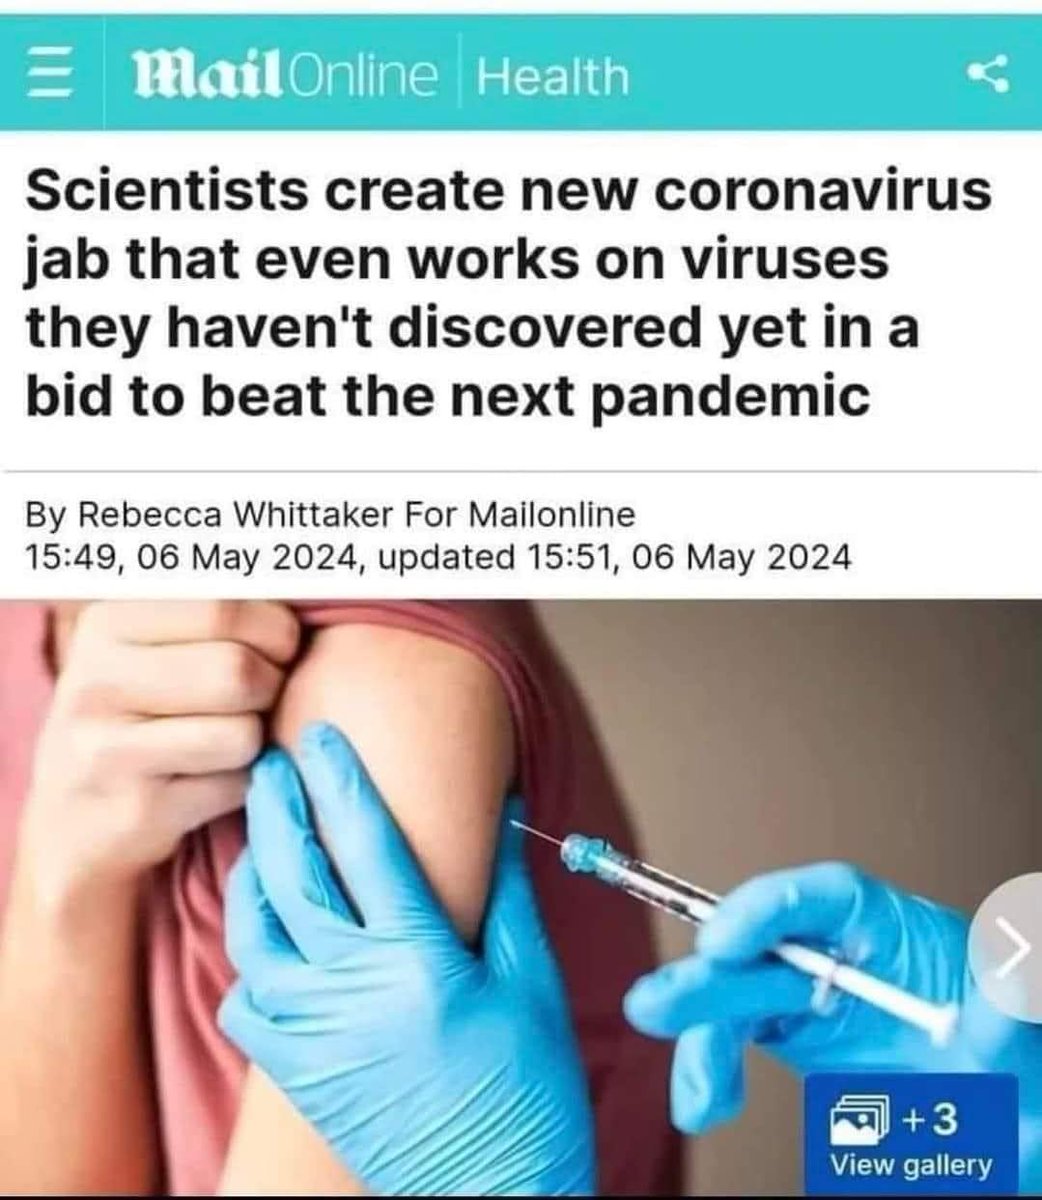 'Wissenschaftler haben einen neuen Impfstoff erfunden der gegen Coronaviren hilft die noch gar nicht entdeckt worden sind.'
na, kannst du es kaum erwarten
weitere 💉💉💉 zu bekommen?
#Impfung #ploetzlichundunerwartet #nebenwirkungen #AstraZeneca #whopandemievertrag #nwo #wef